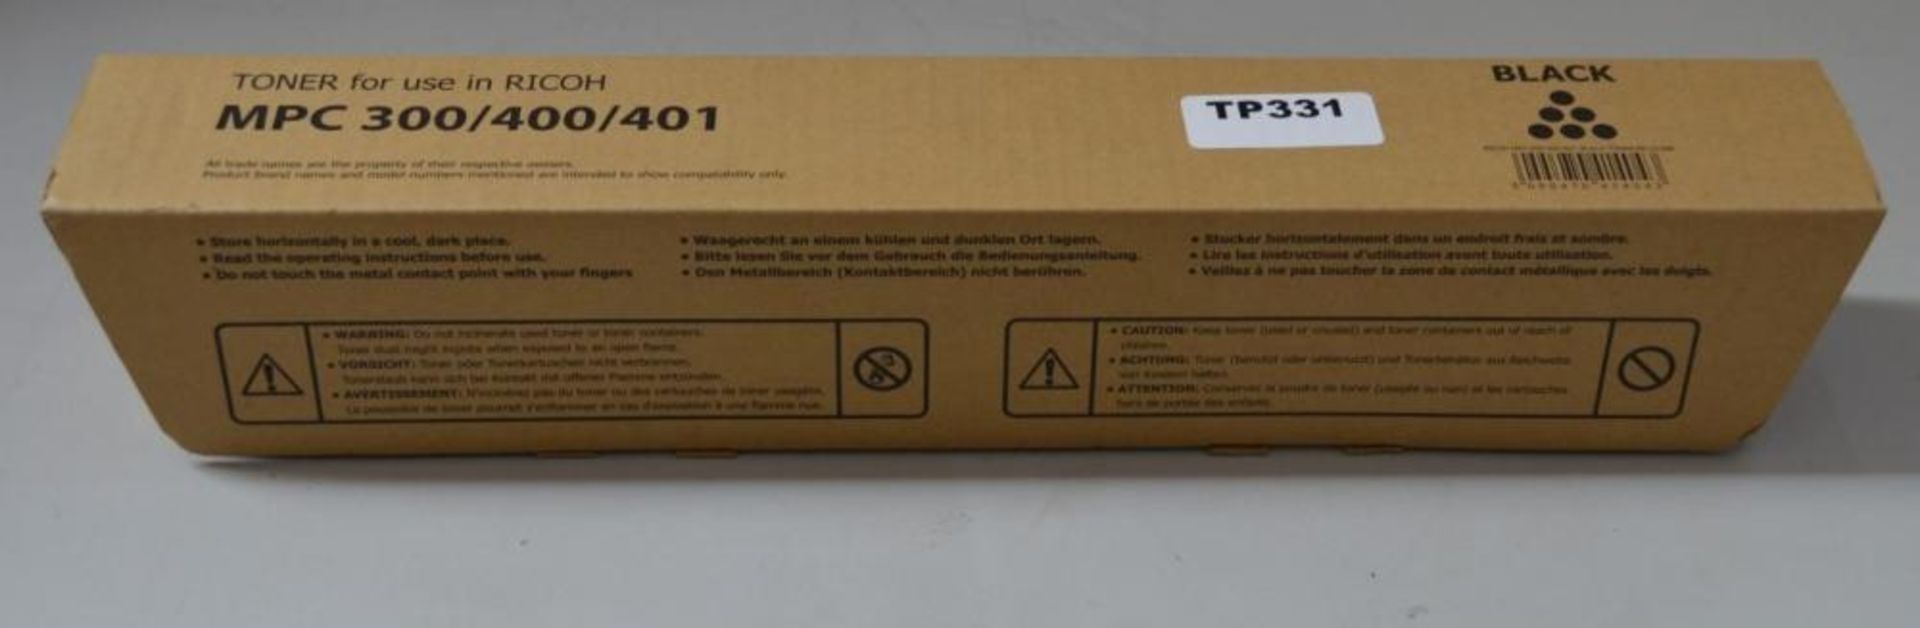 1 x Ricoh Black Toner For MPC 300/400/401 New In Box - Ref TP331 - CL394 - Location: Altrincham WA14